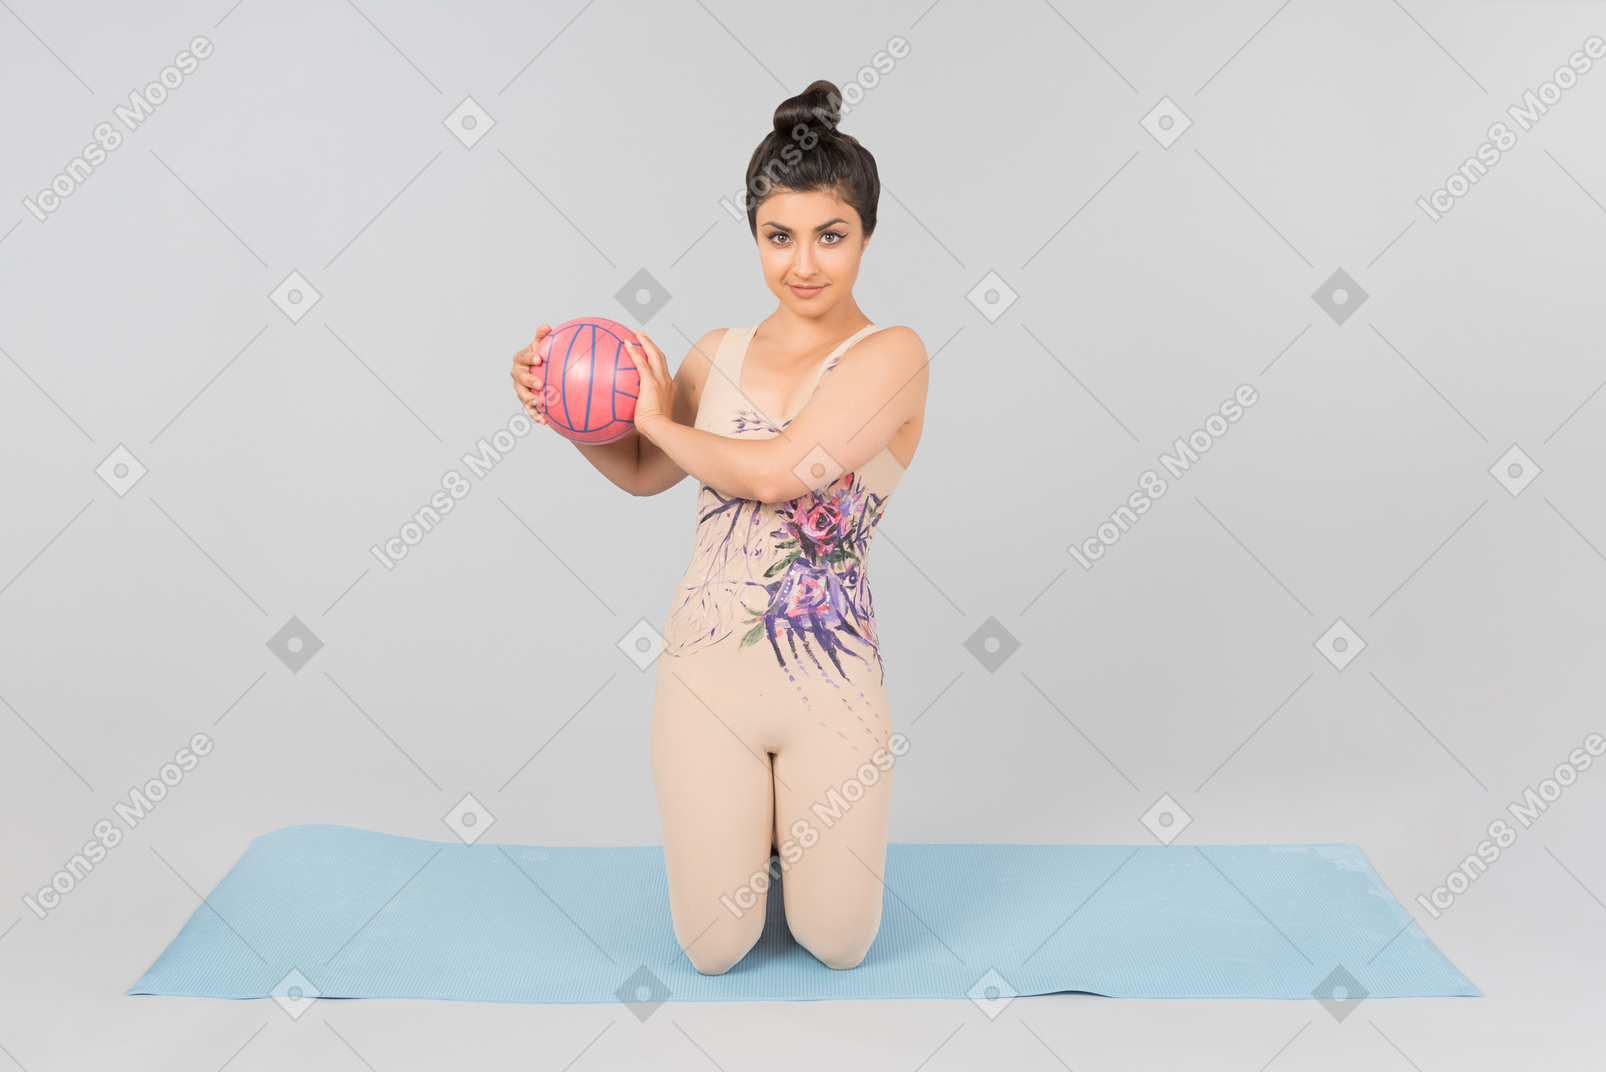 Joven gimnasta india sentada sobre una estera de yoga y sosteniendo la pelota con ambas manos